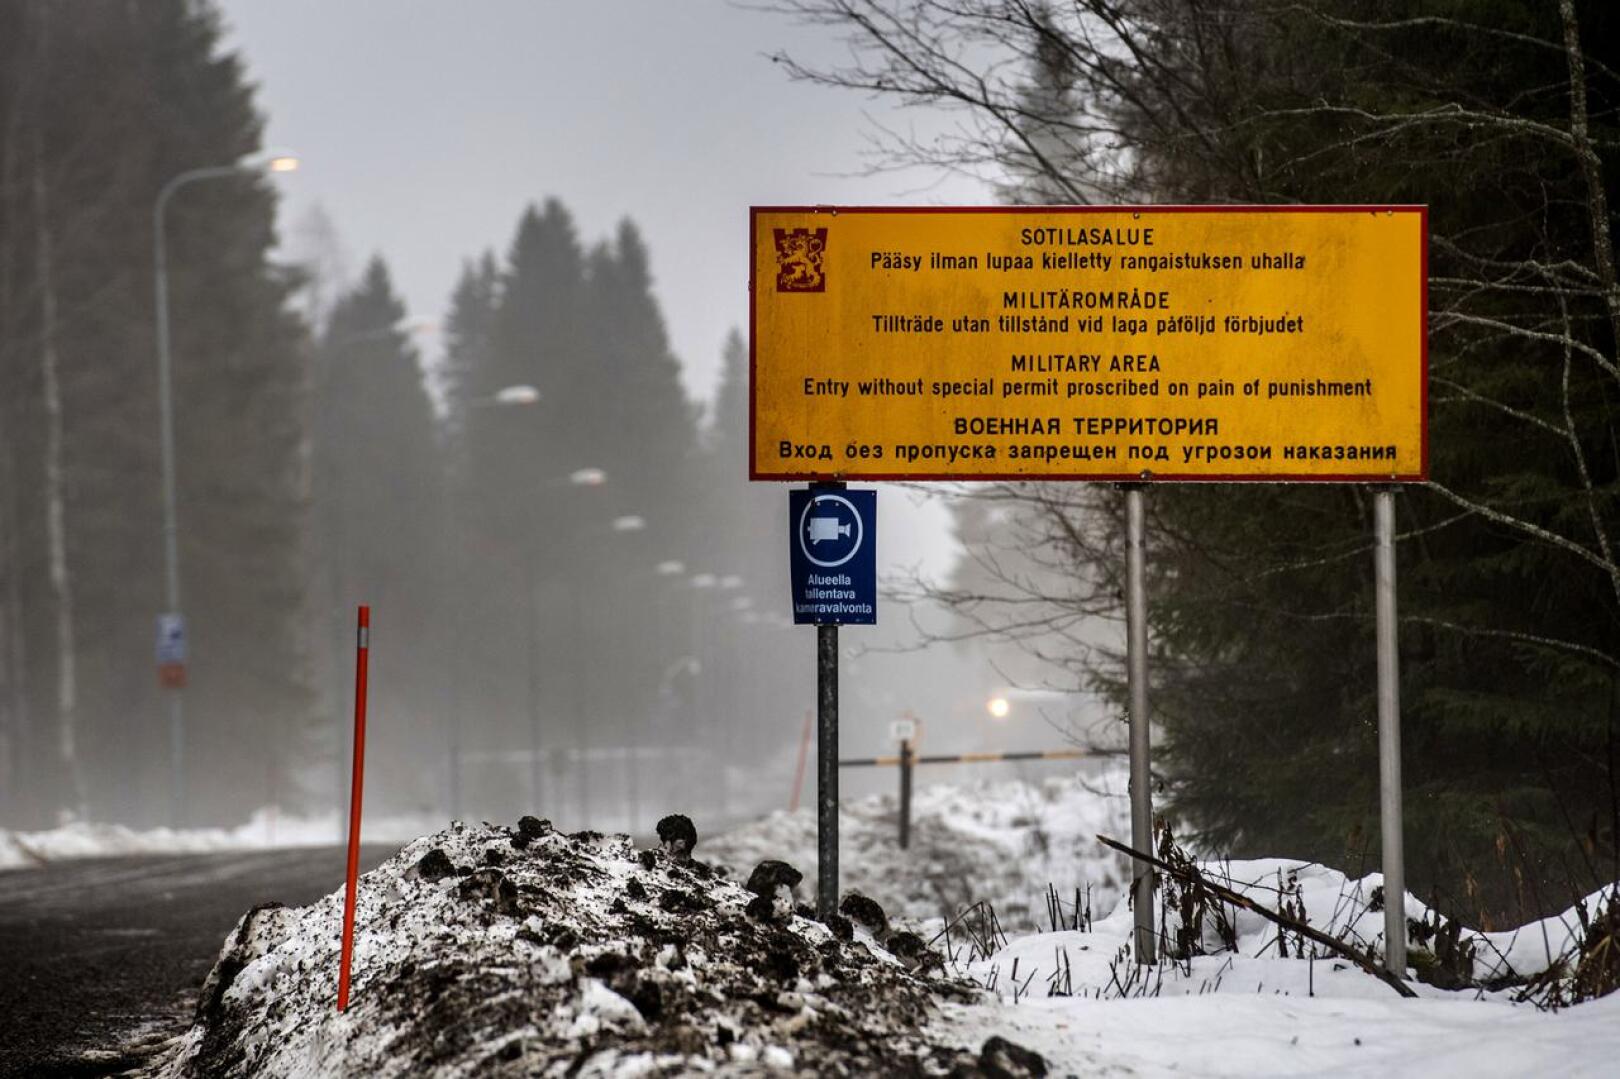 Räjähdekeskuksen Haapajärven tuotanto-osaston toimintaa laajennetaan. Haapajärvelle rekrytoidaan lisää väkeä tekemään ammuksia.